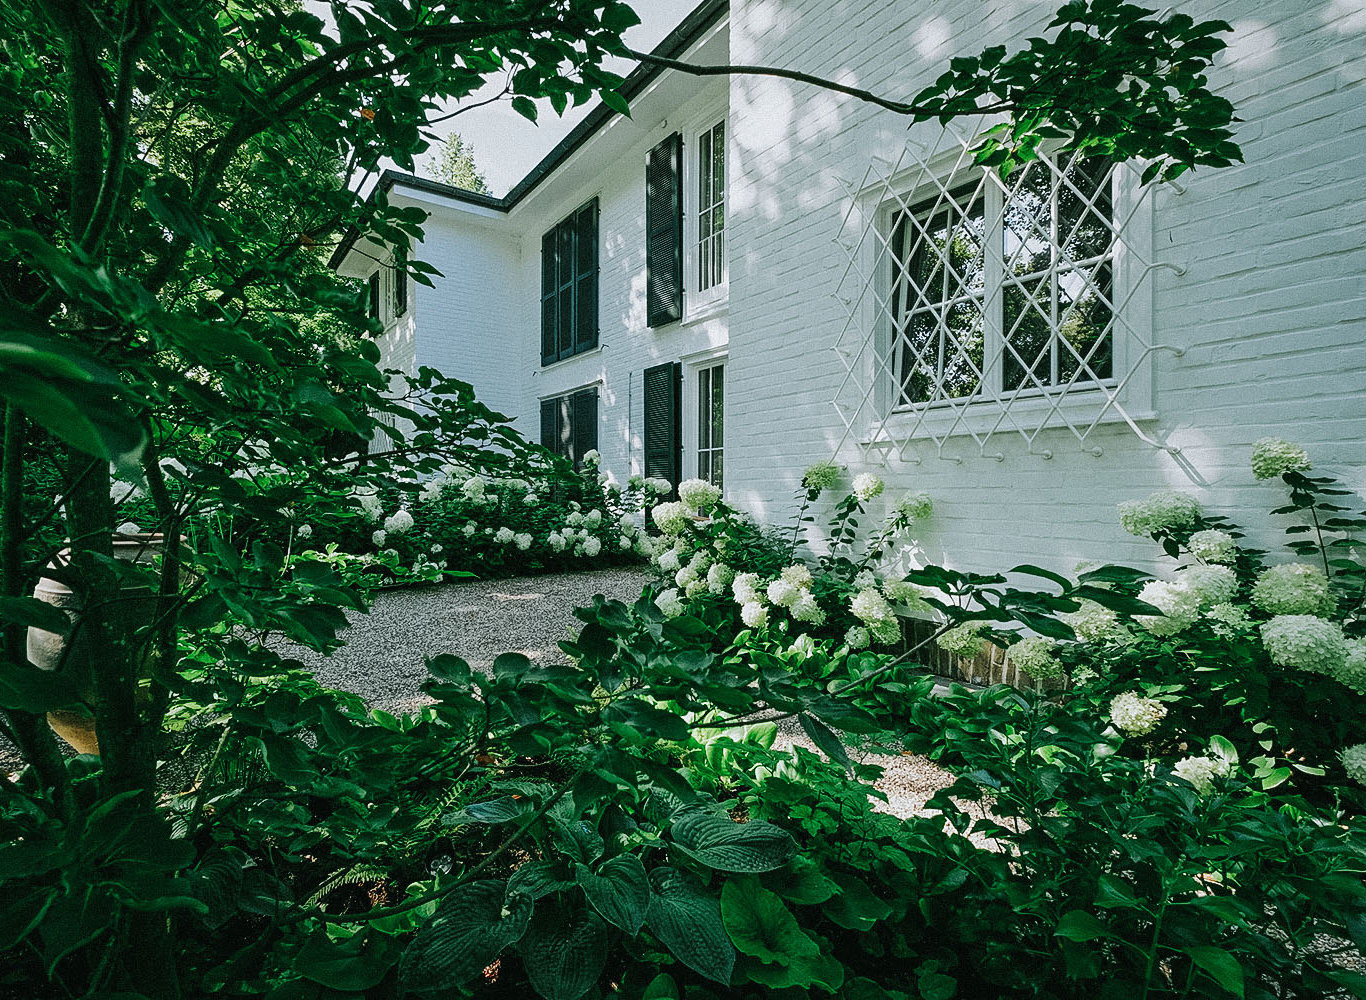 Gartenweg aus Kies, der durch eine dichte Bepflanzung von Stauden in Form von weißen Hortensien und Gehölzen an einem Privathaus entlang führt